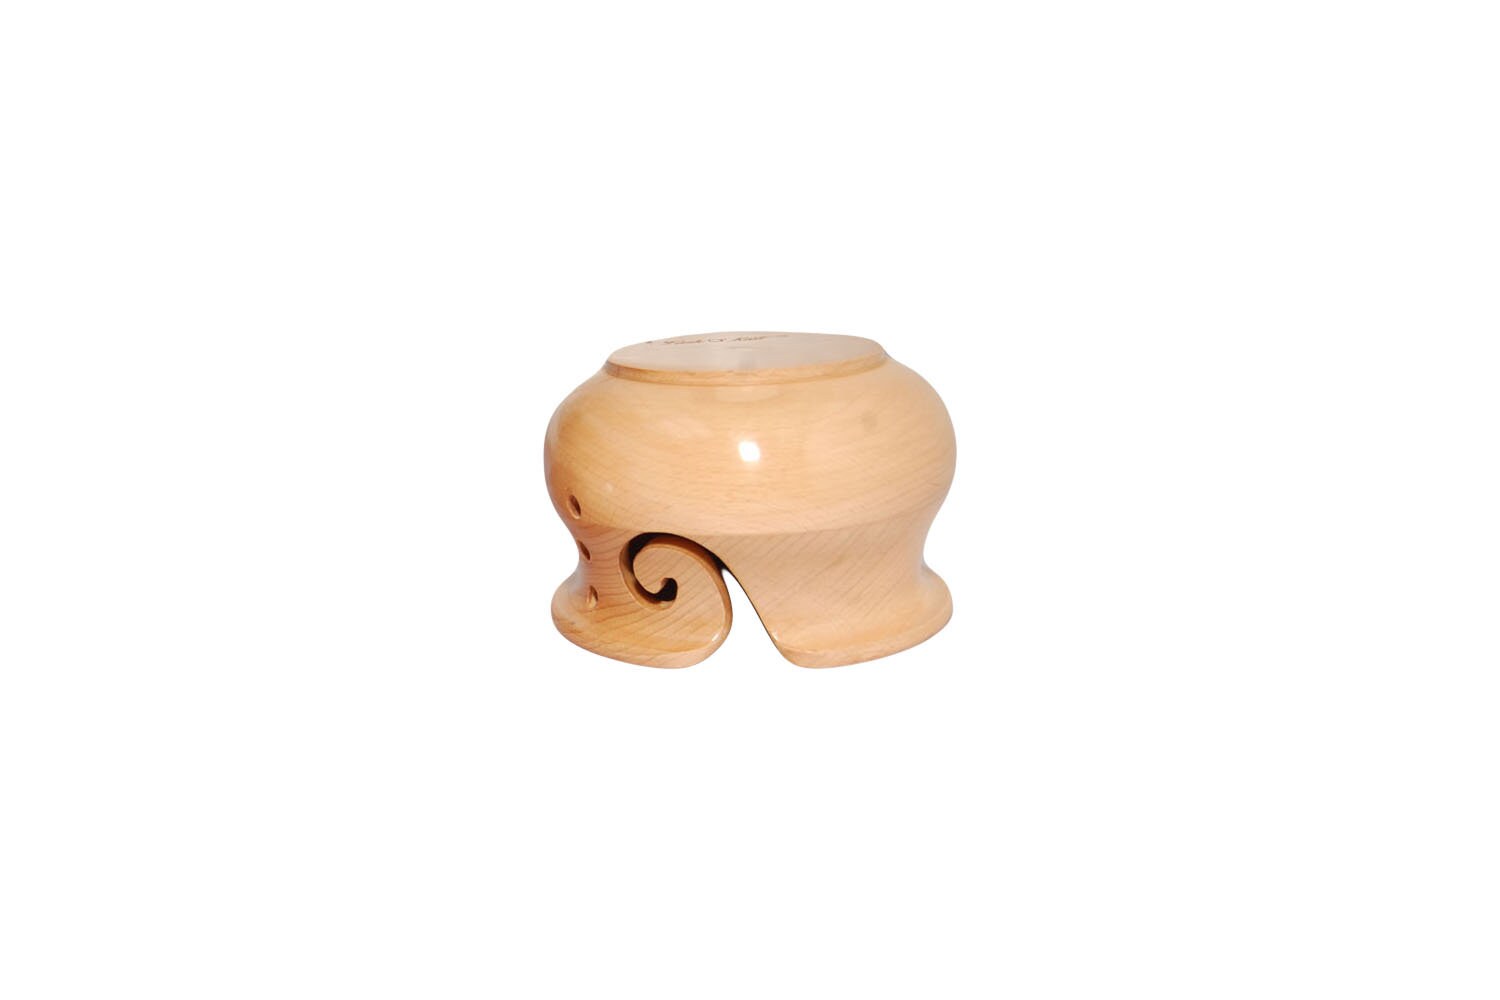 Curvy Steam Beech Wood Yarn Bowl — Hobby & Crafts LLC